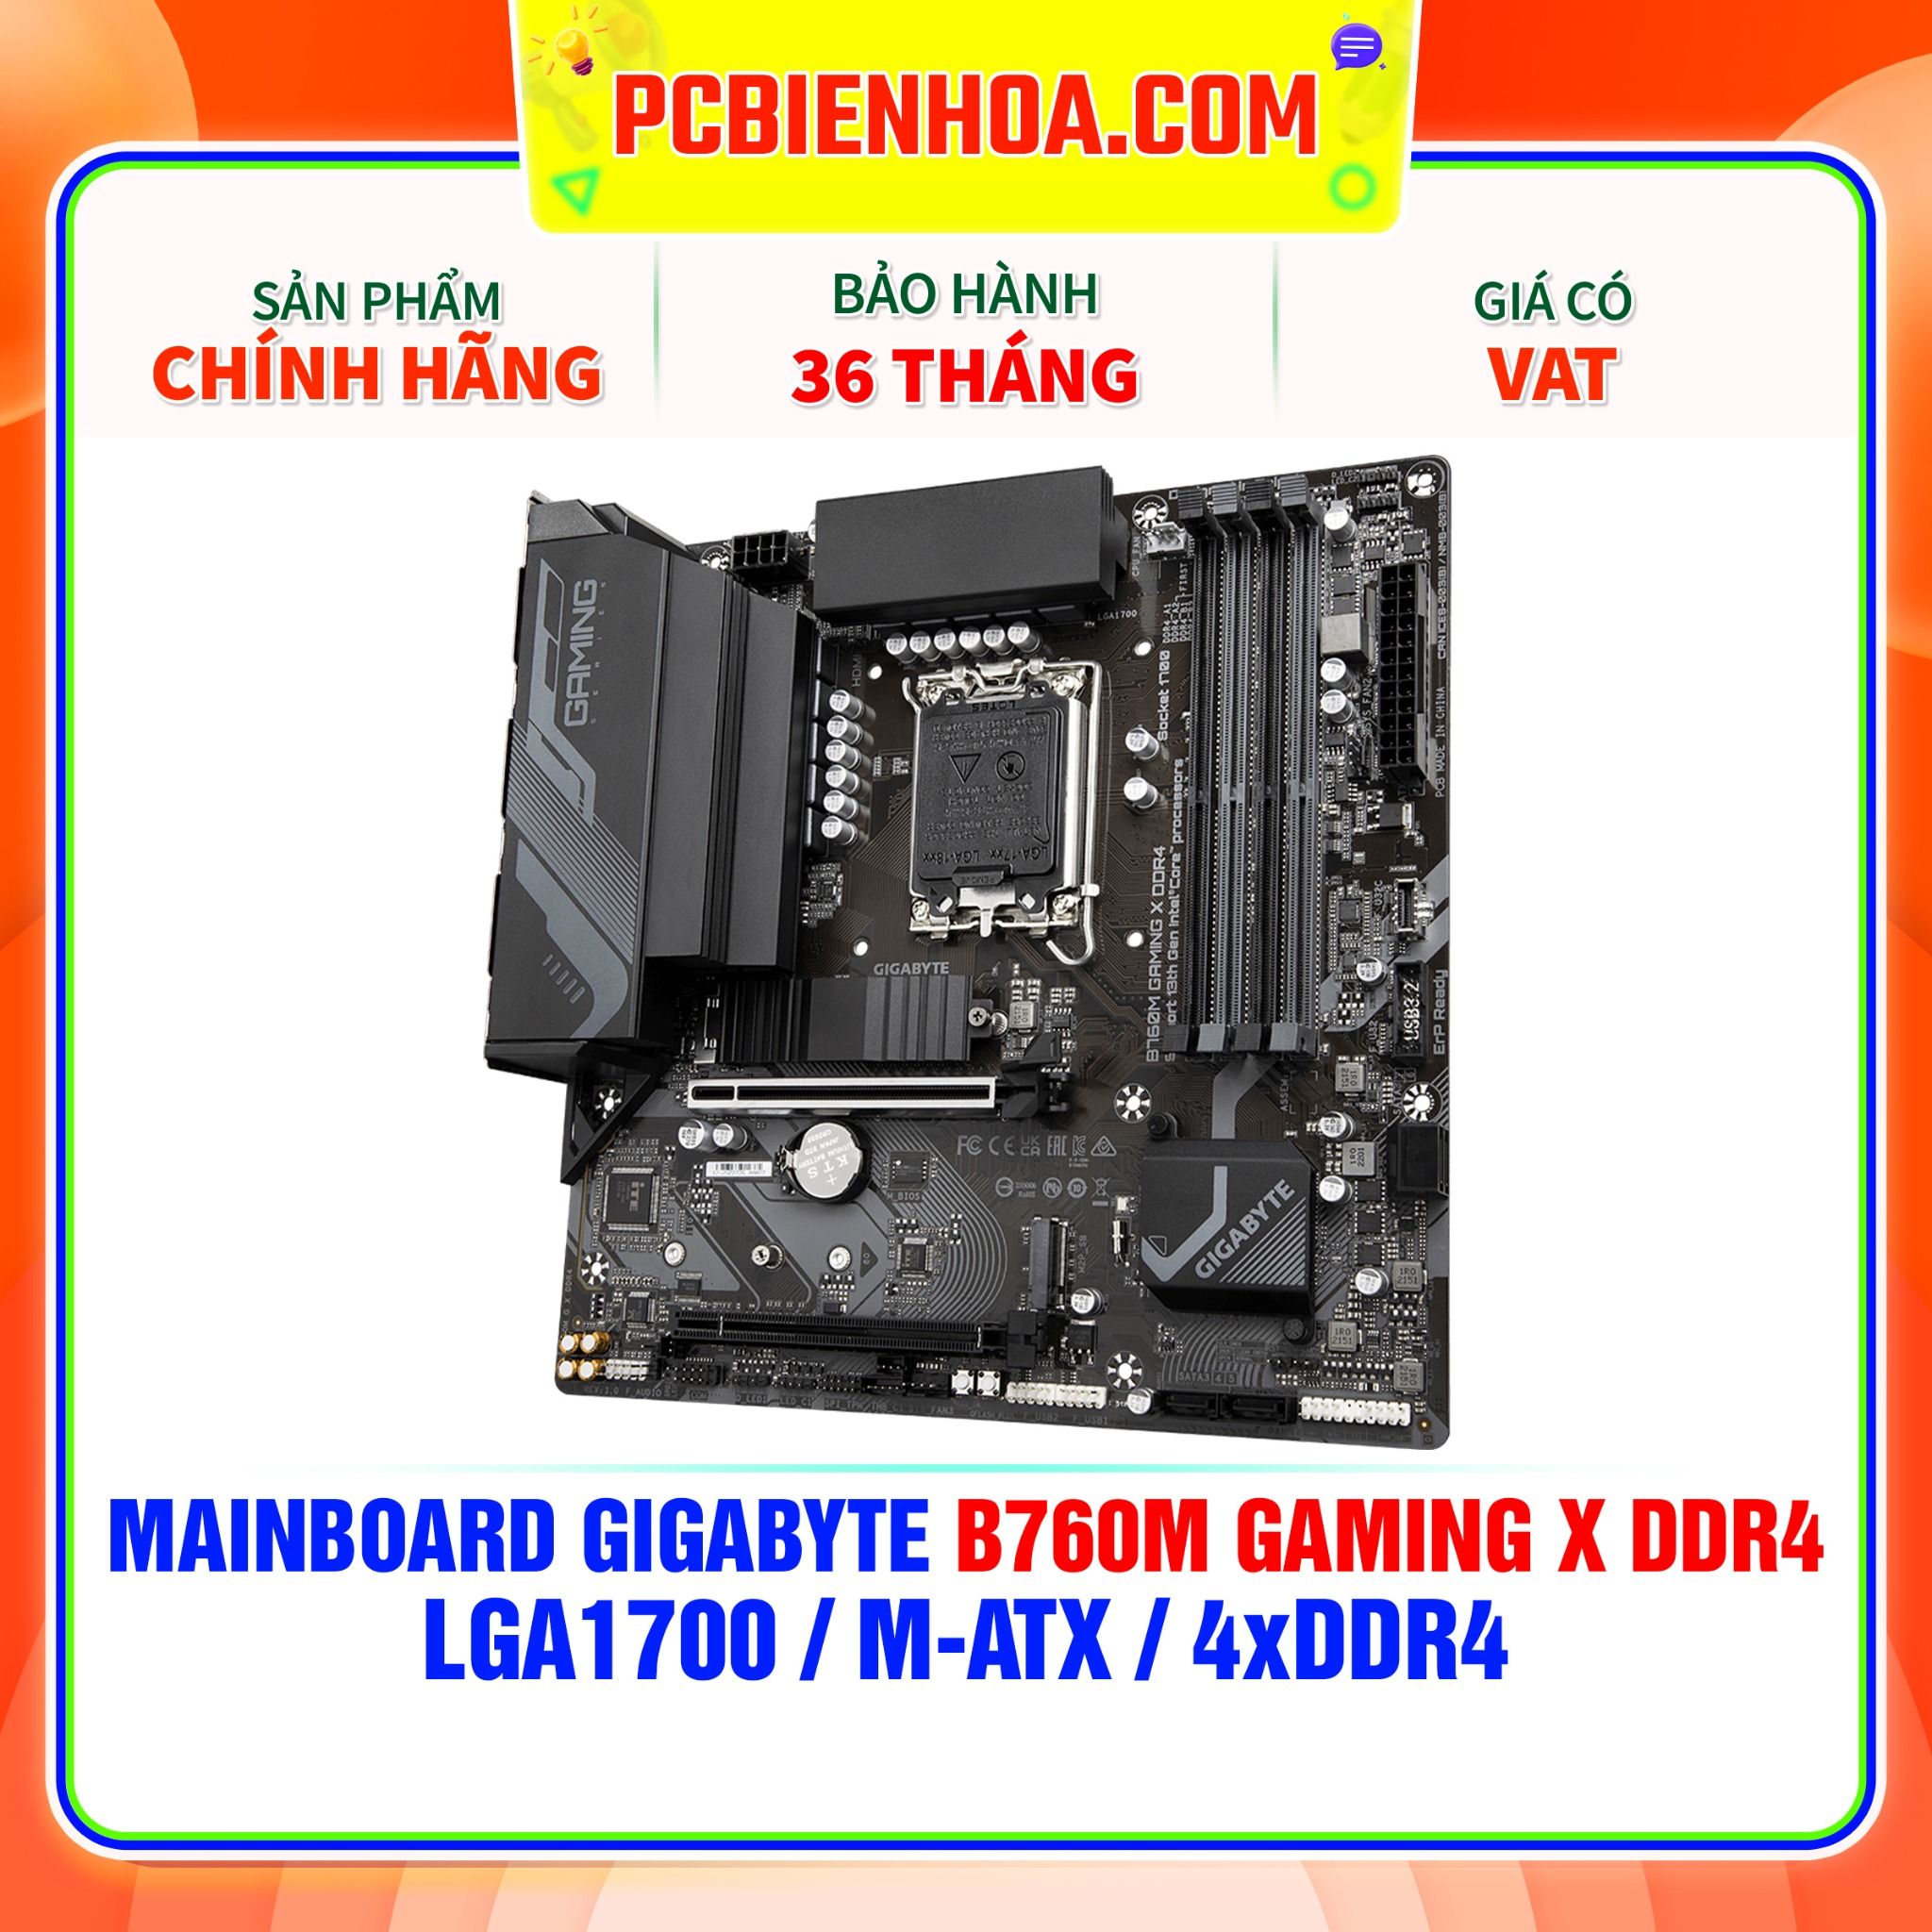  MAINBOARD GIGABYTE B760M GAMING X DDR4 ( LGA1700 / m-ATX / 4xDDR4 ) 